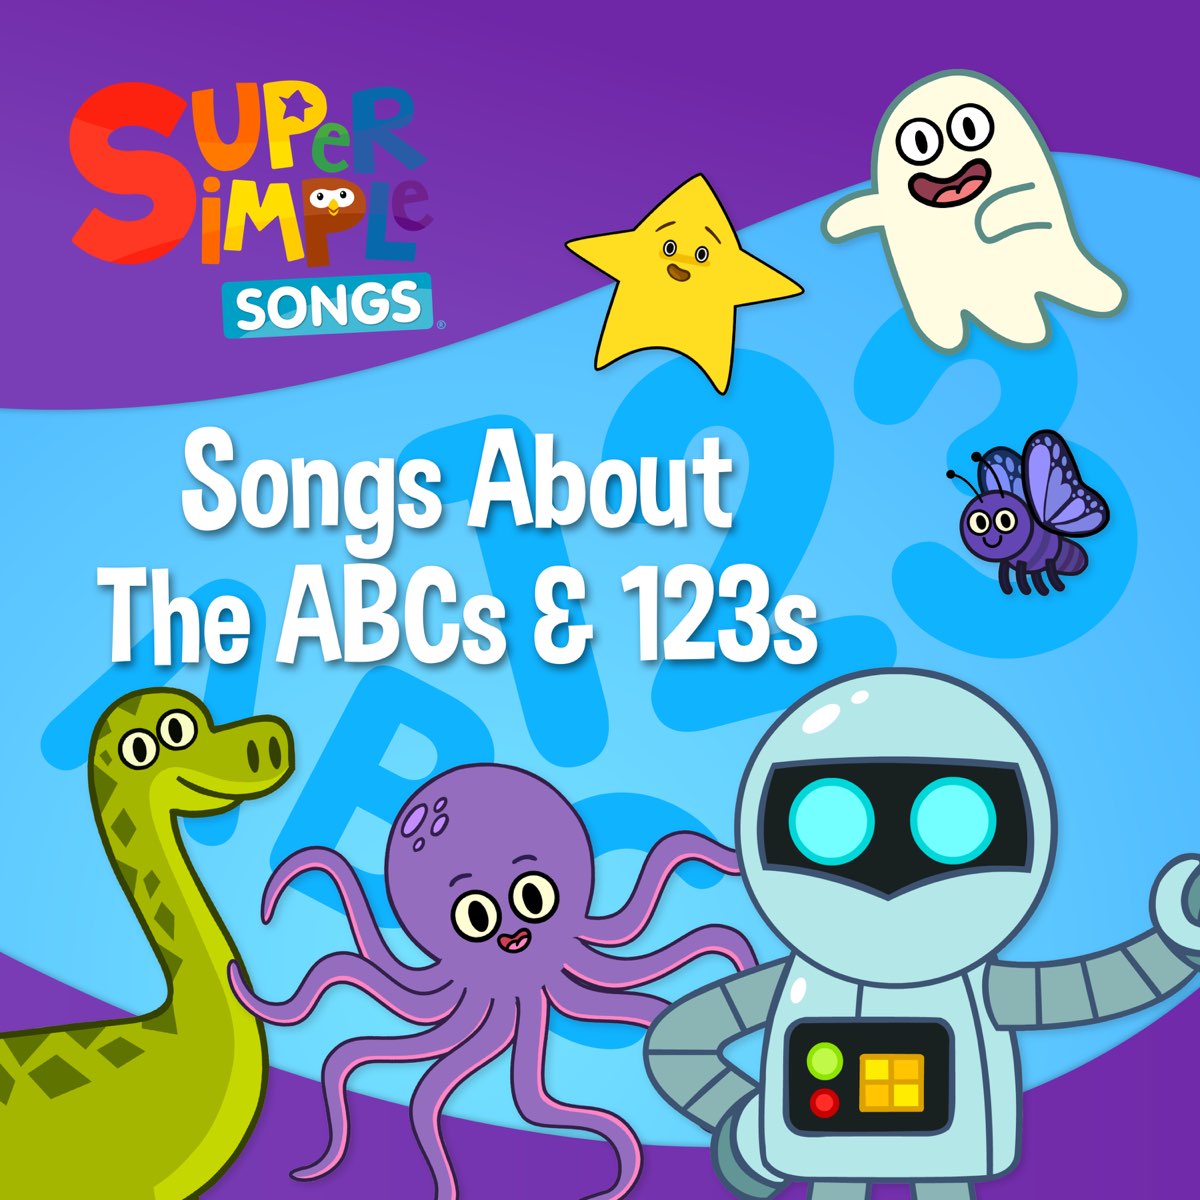 Baby simple songs. Super simple Songs. Песня super simple Songs. Super simple Songs 5. Super simple Songs Alphabet.